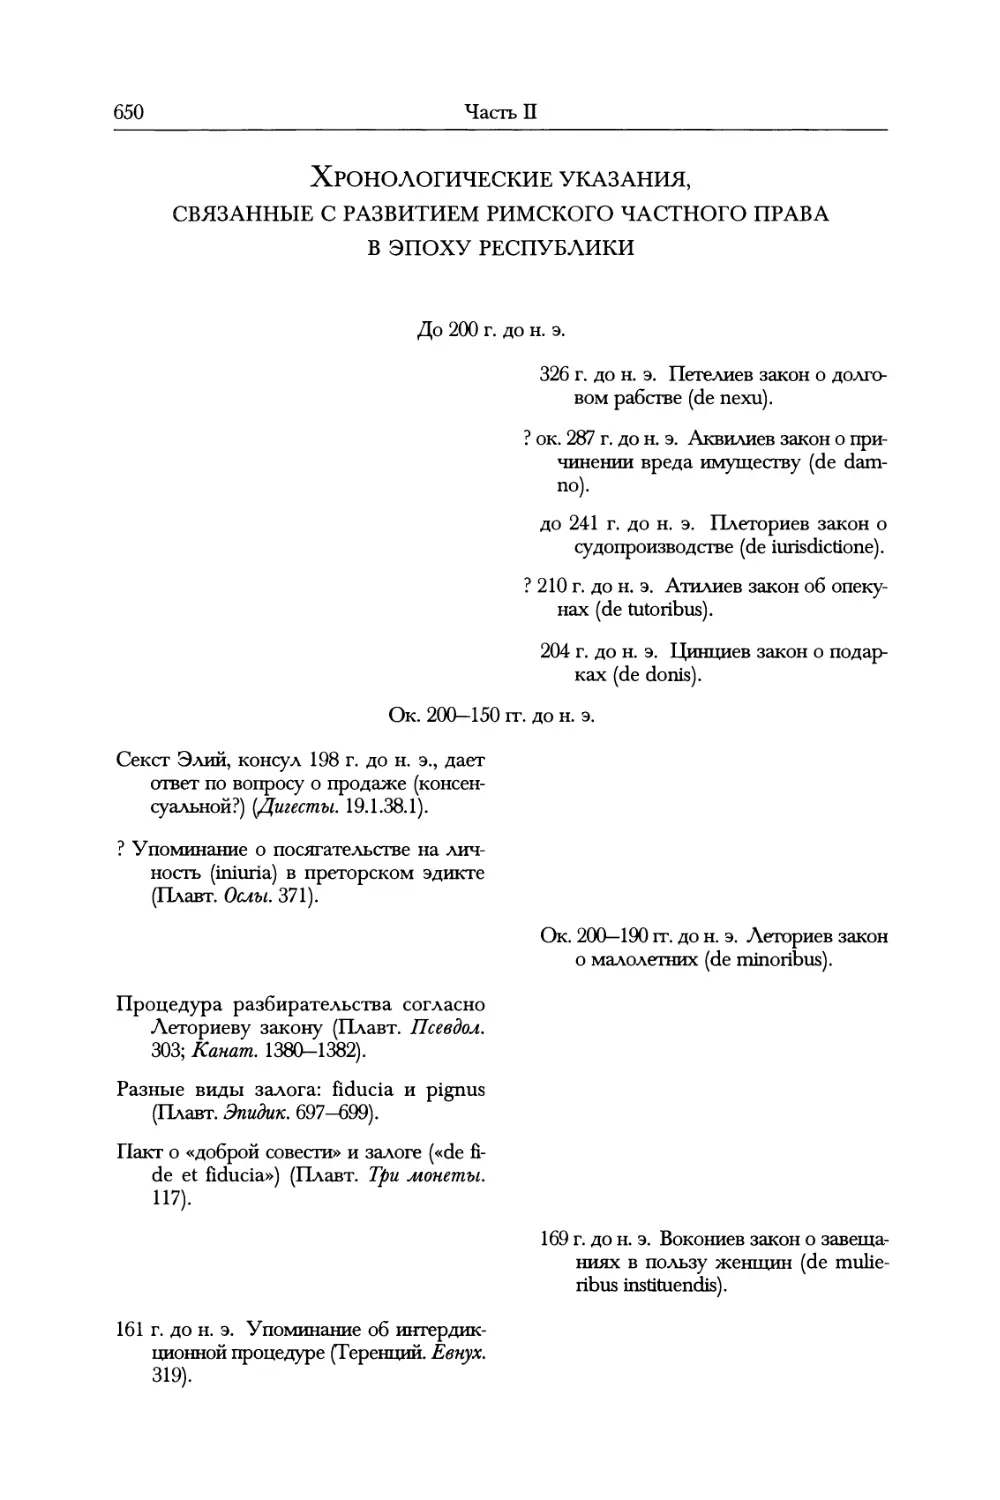 Хронологические указания, связанные с развитием римского частного права в эпоху Республики